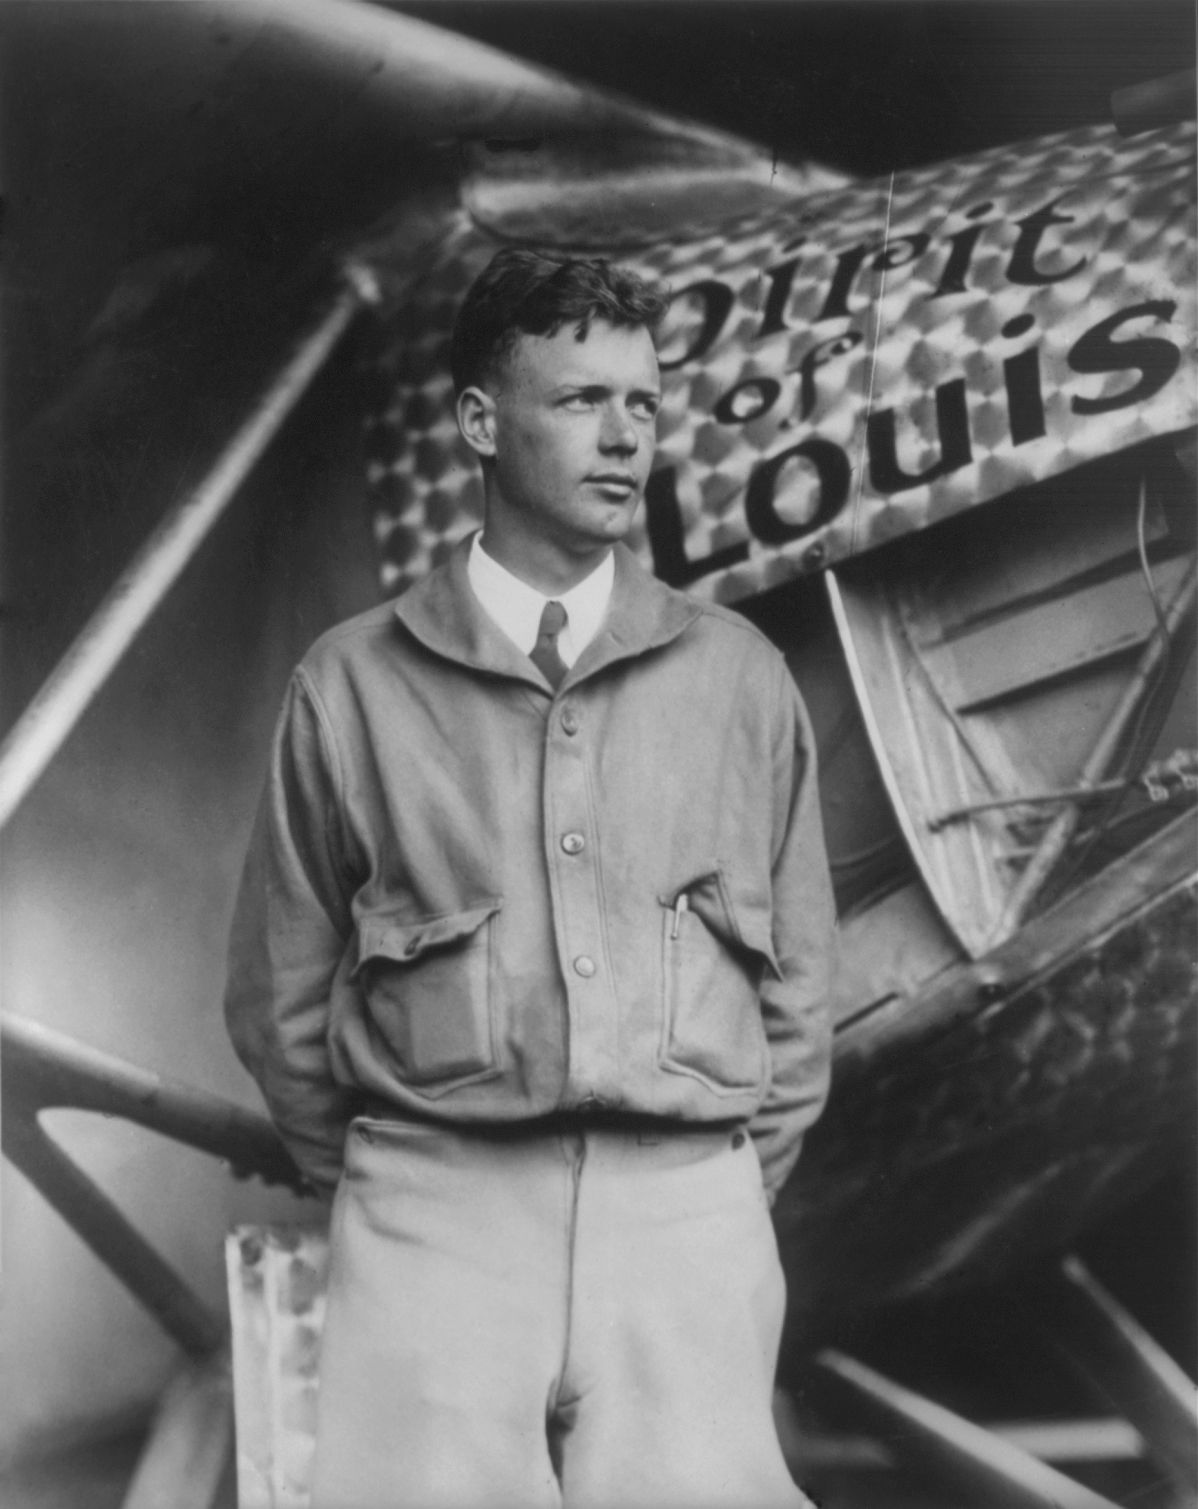 This Week In Aviation Historical past: Amelia Earhart & Charles Lindbergh’s Groundbreaking Transatlantic Flights